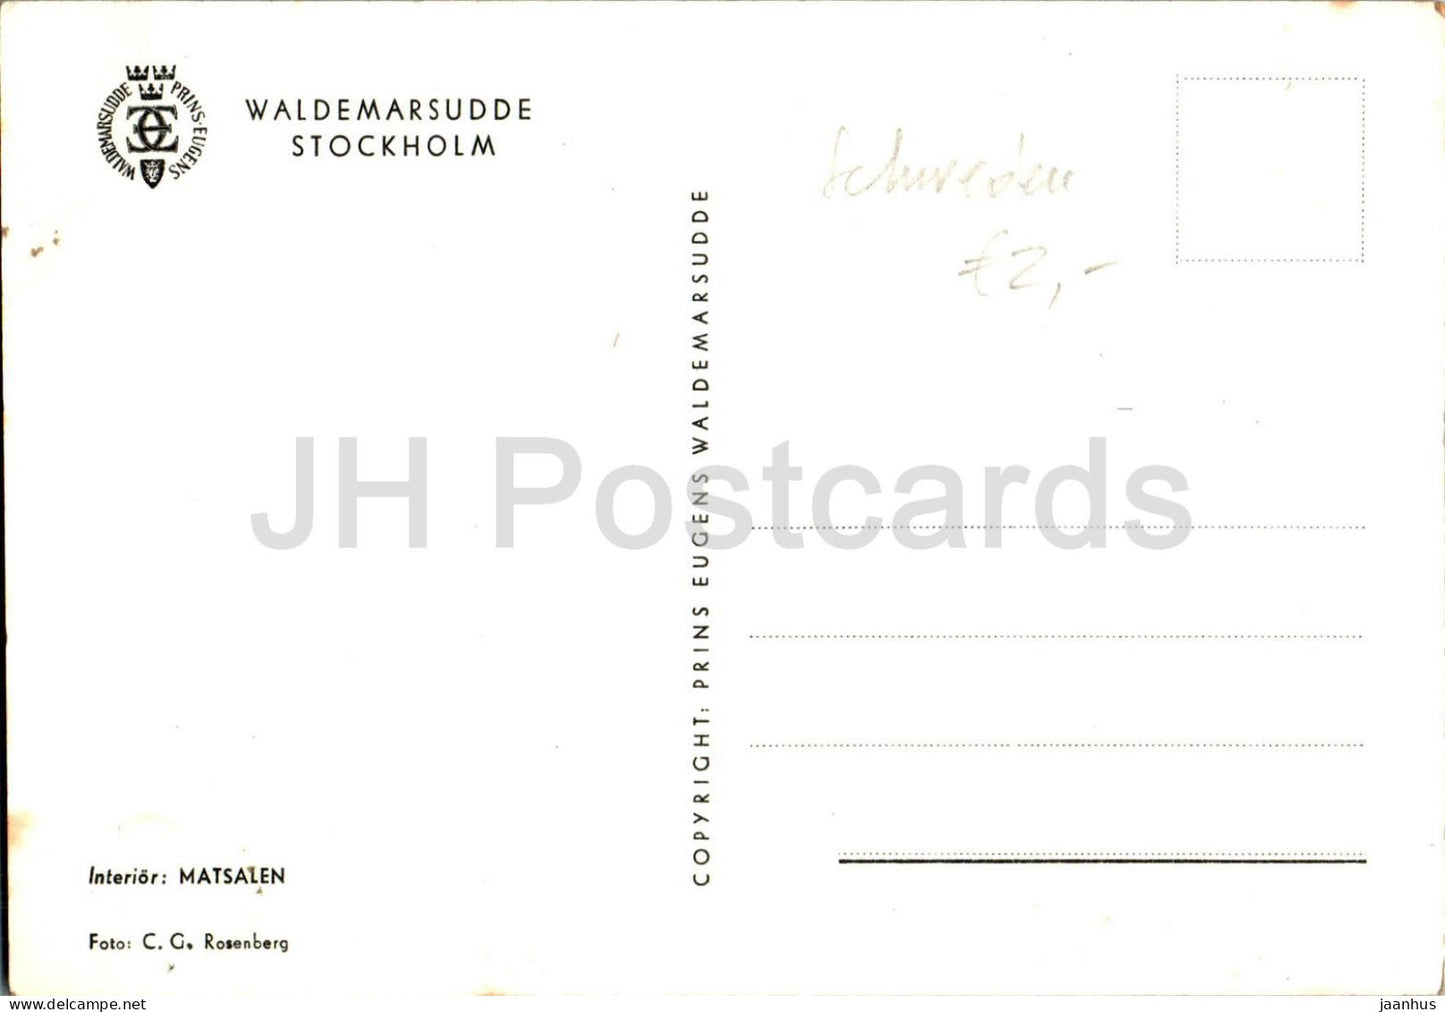 Stockholm - Waldemarsudde - Interieur - Matsalen - Interieur - Esszimmer - alte Postkarte - Schweden - unbenutzt 